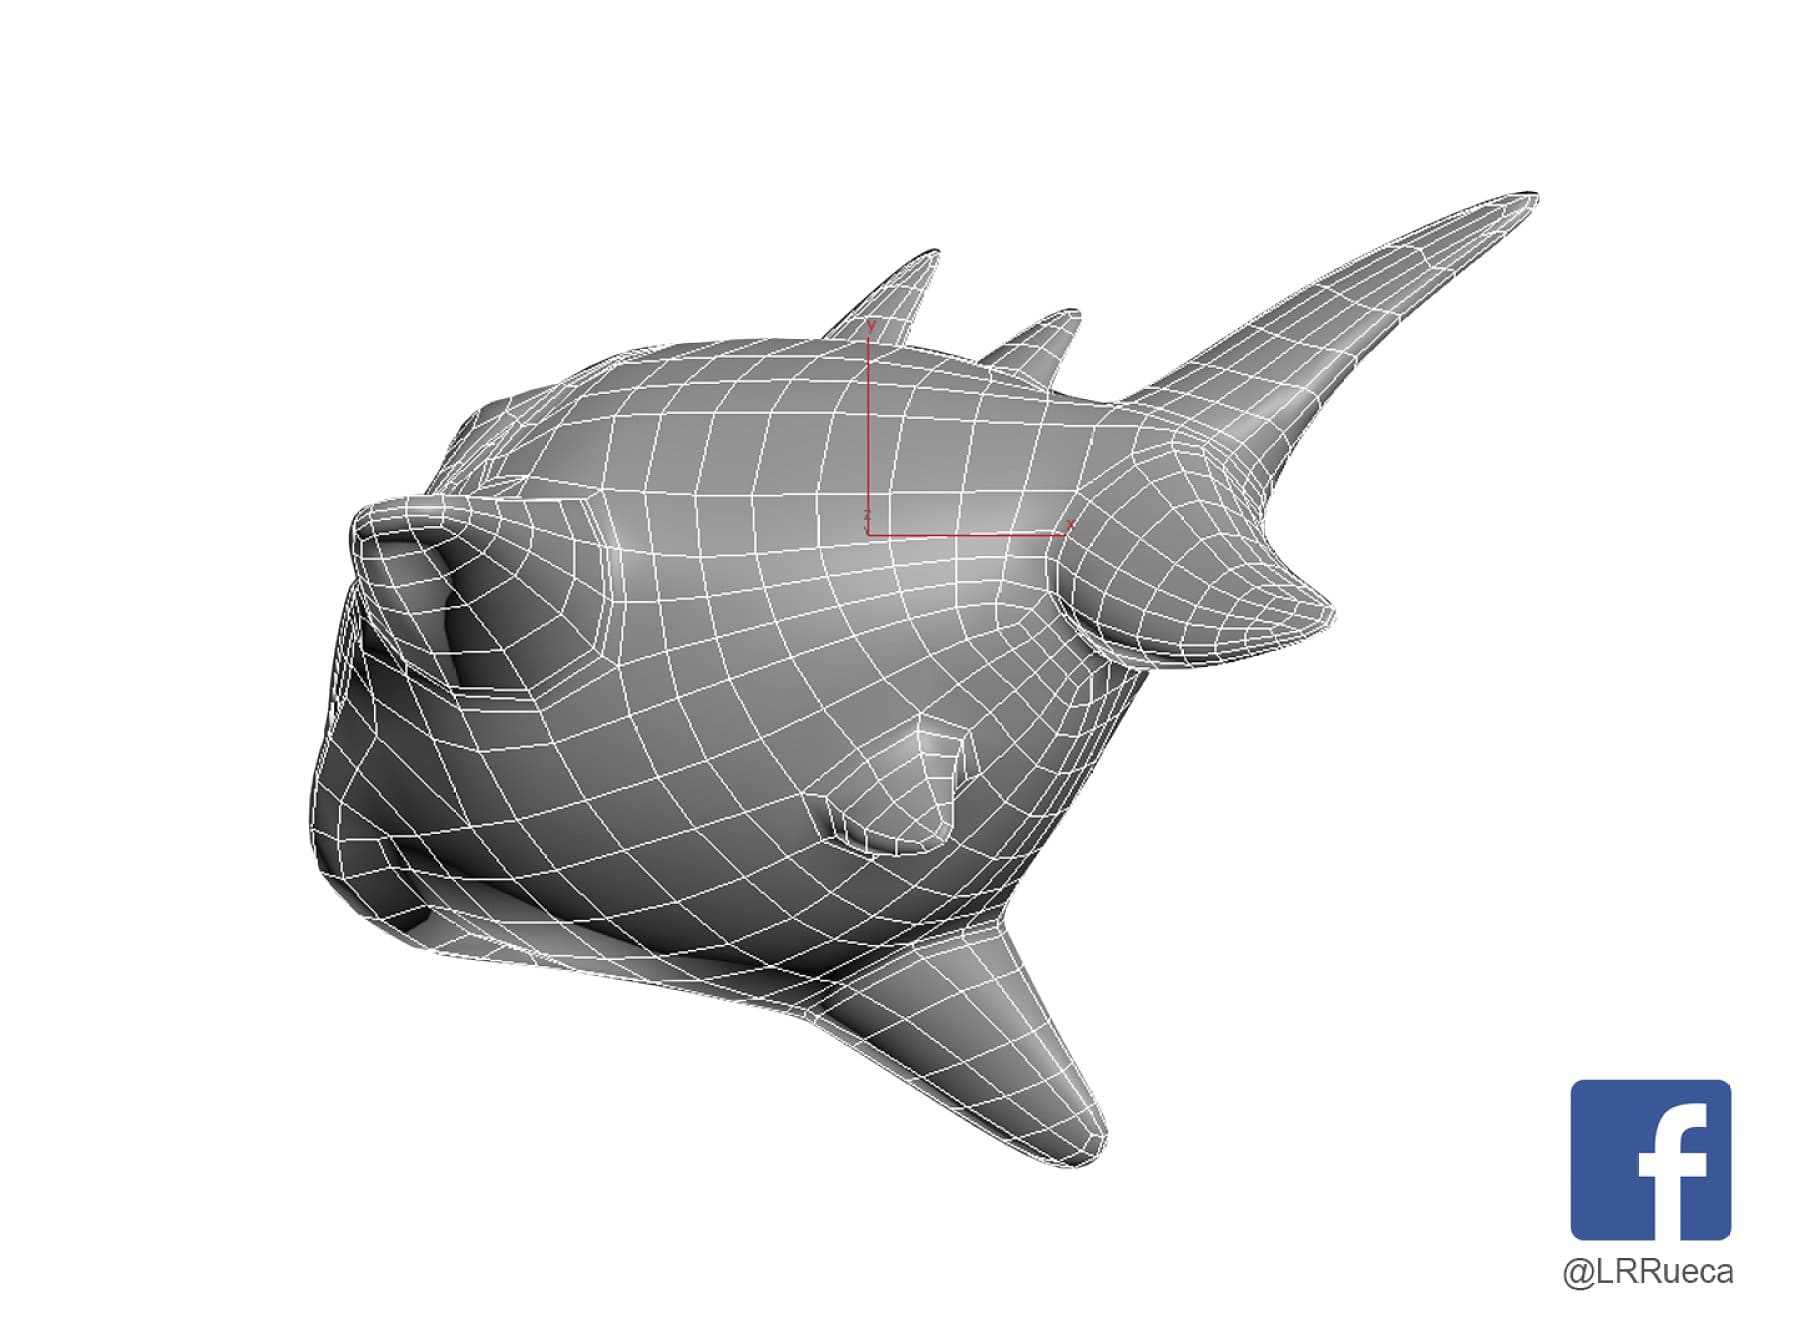 3D model of a stylized shark species from below.